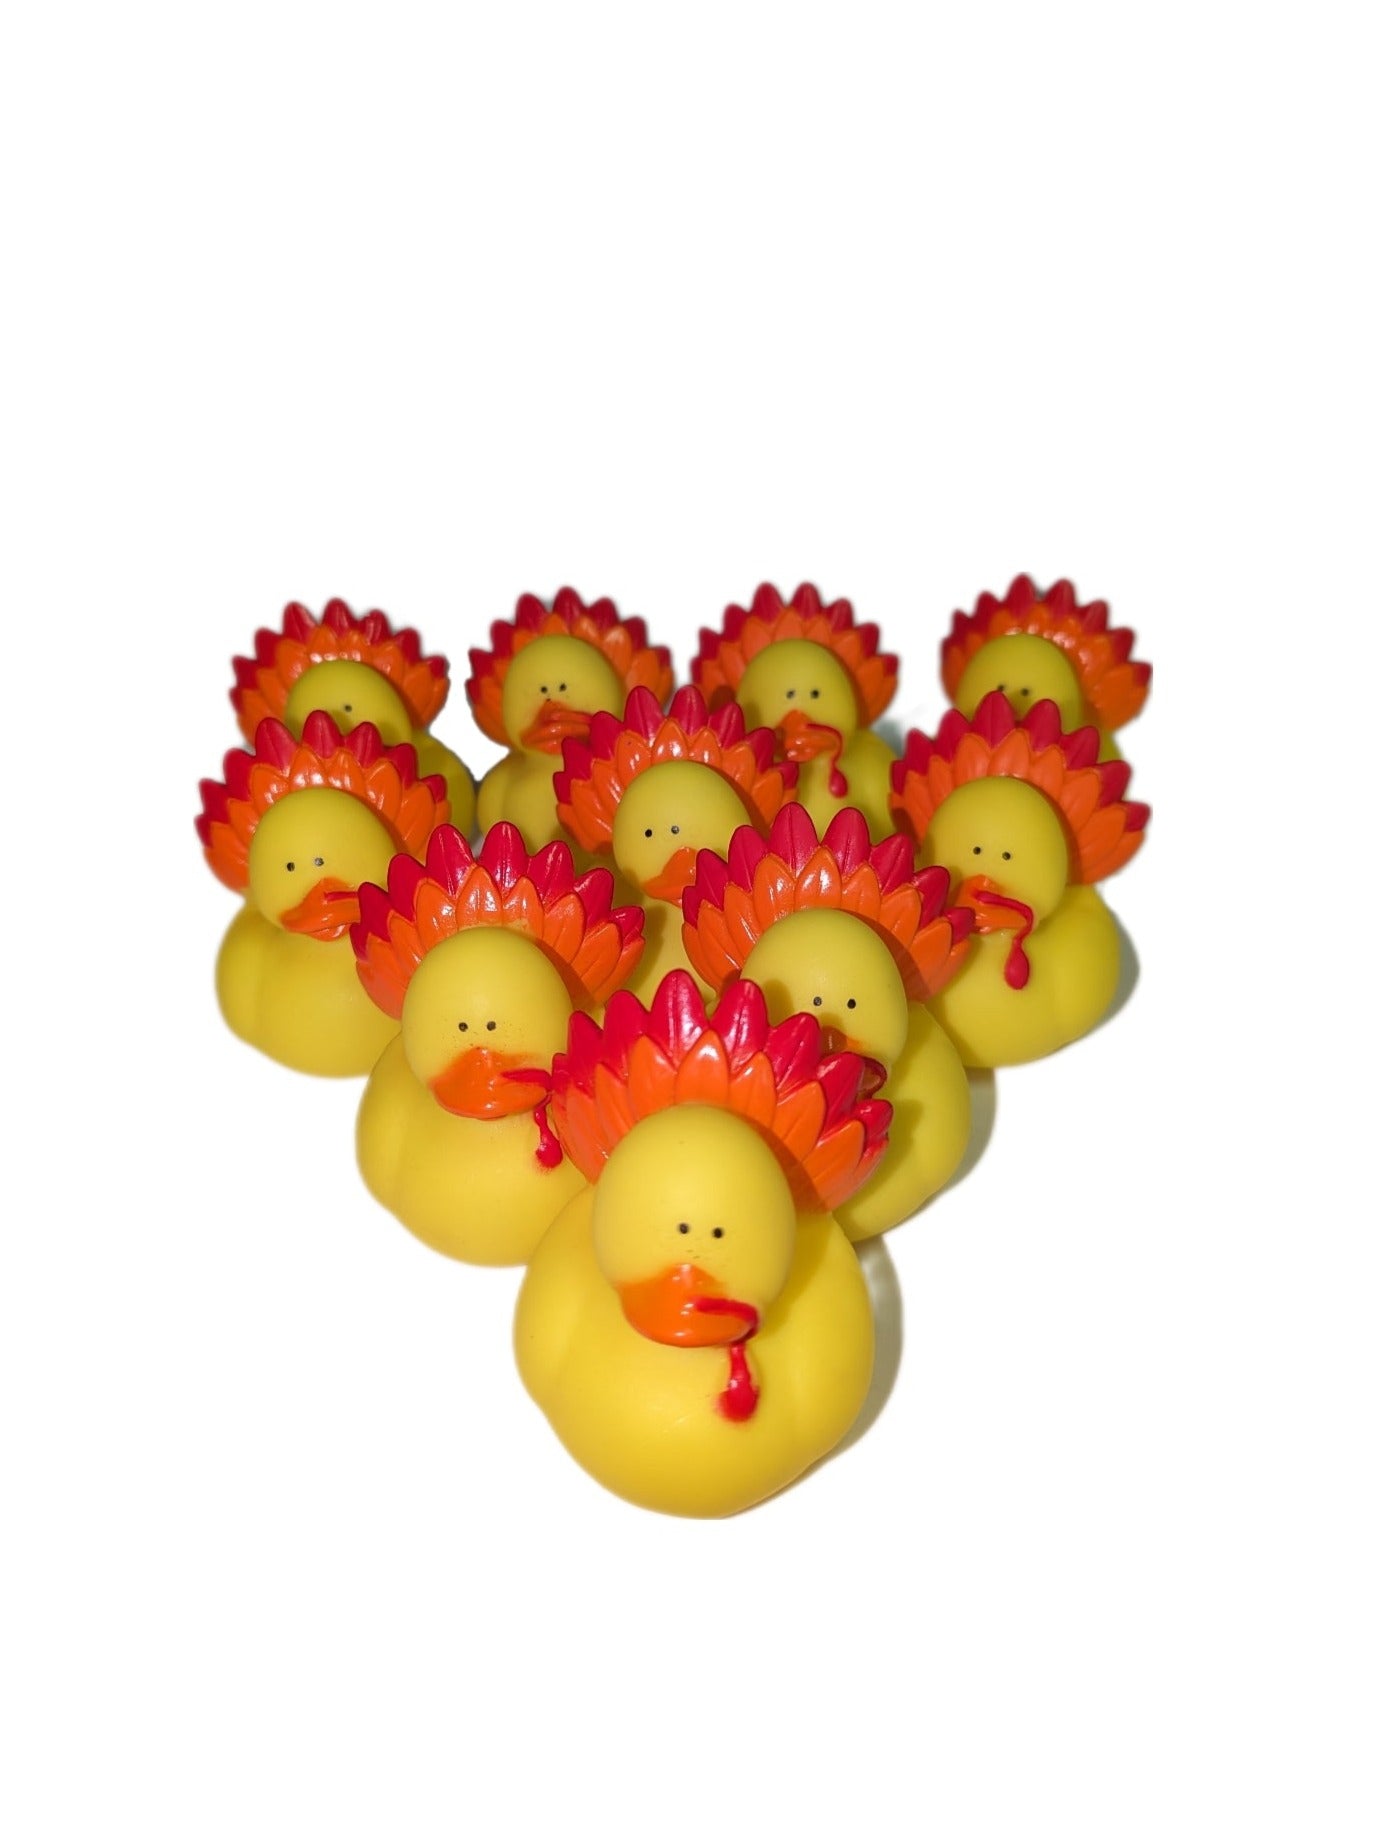 10 Thanksgiving Turkeys - 2" Rubber Ducks